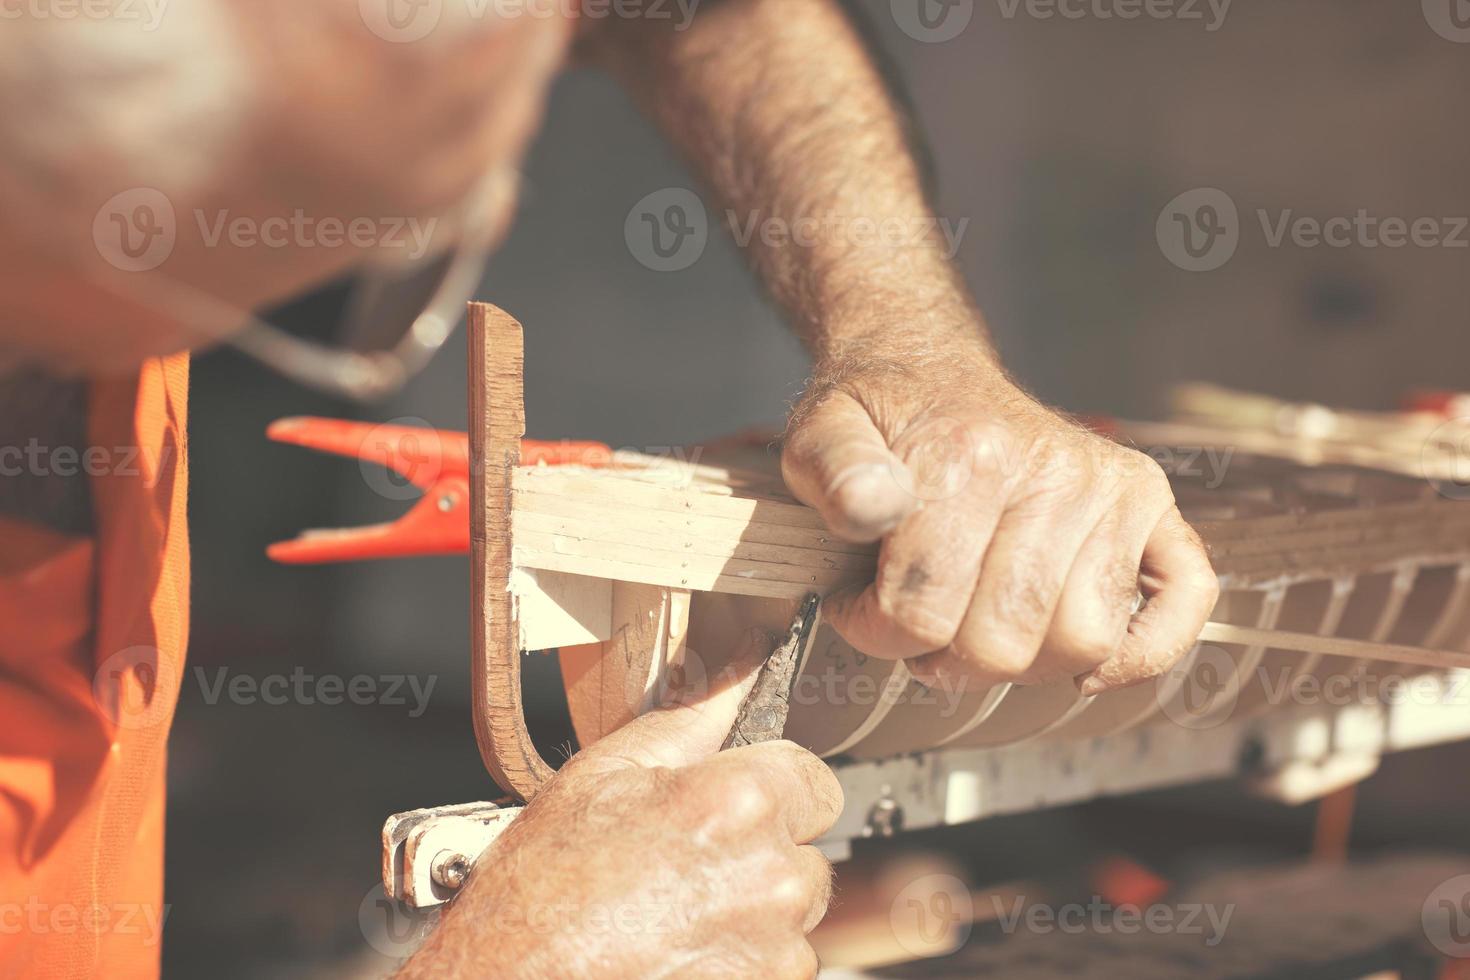 Artesanía artesanal de un modelo de barco de madera. foto